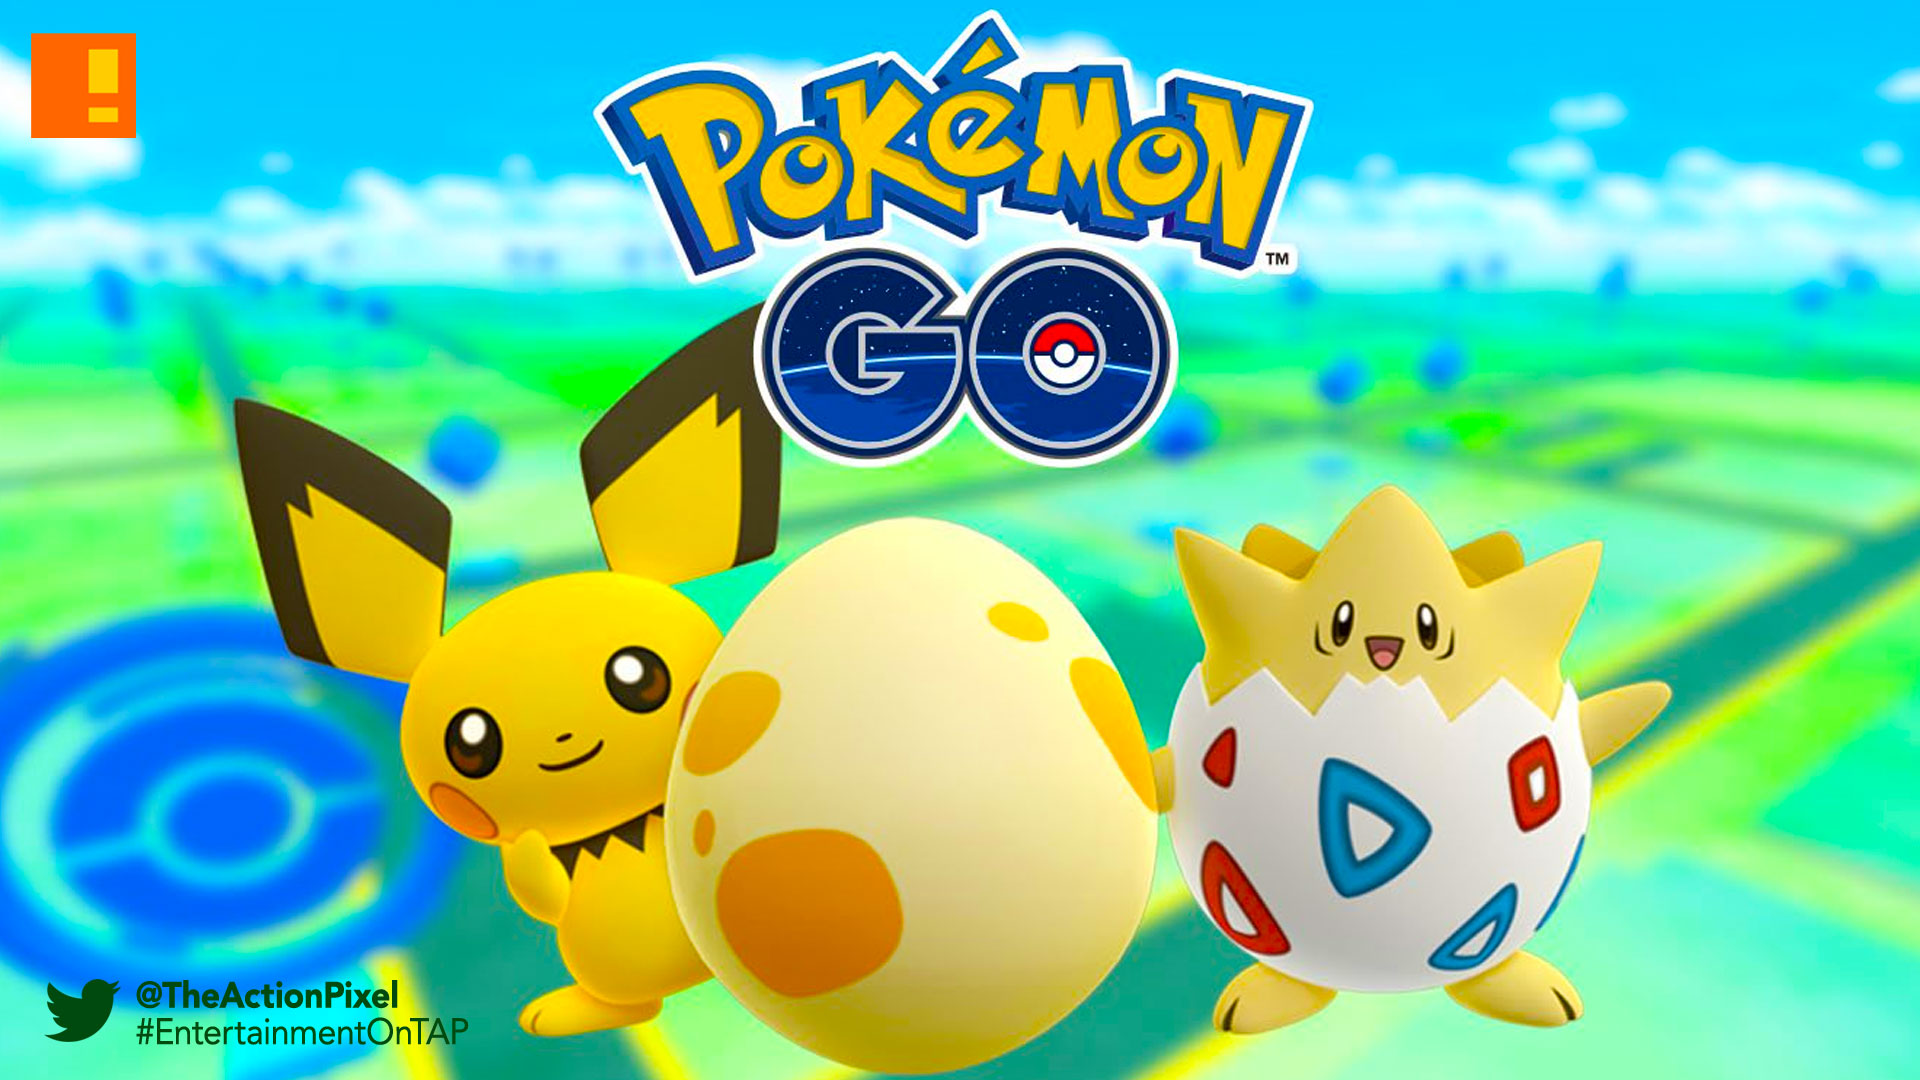 pokemon go, pokémon go, pokemon, pokémon, nintendo, entertainment on tap, the action pixel